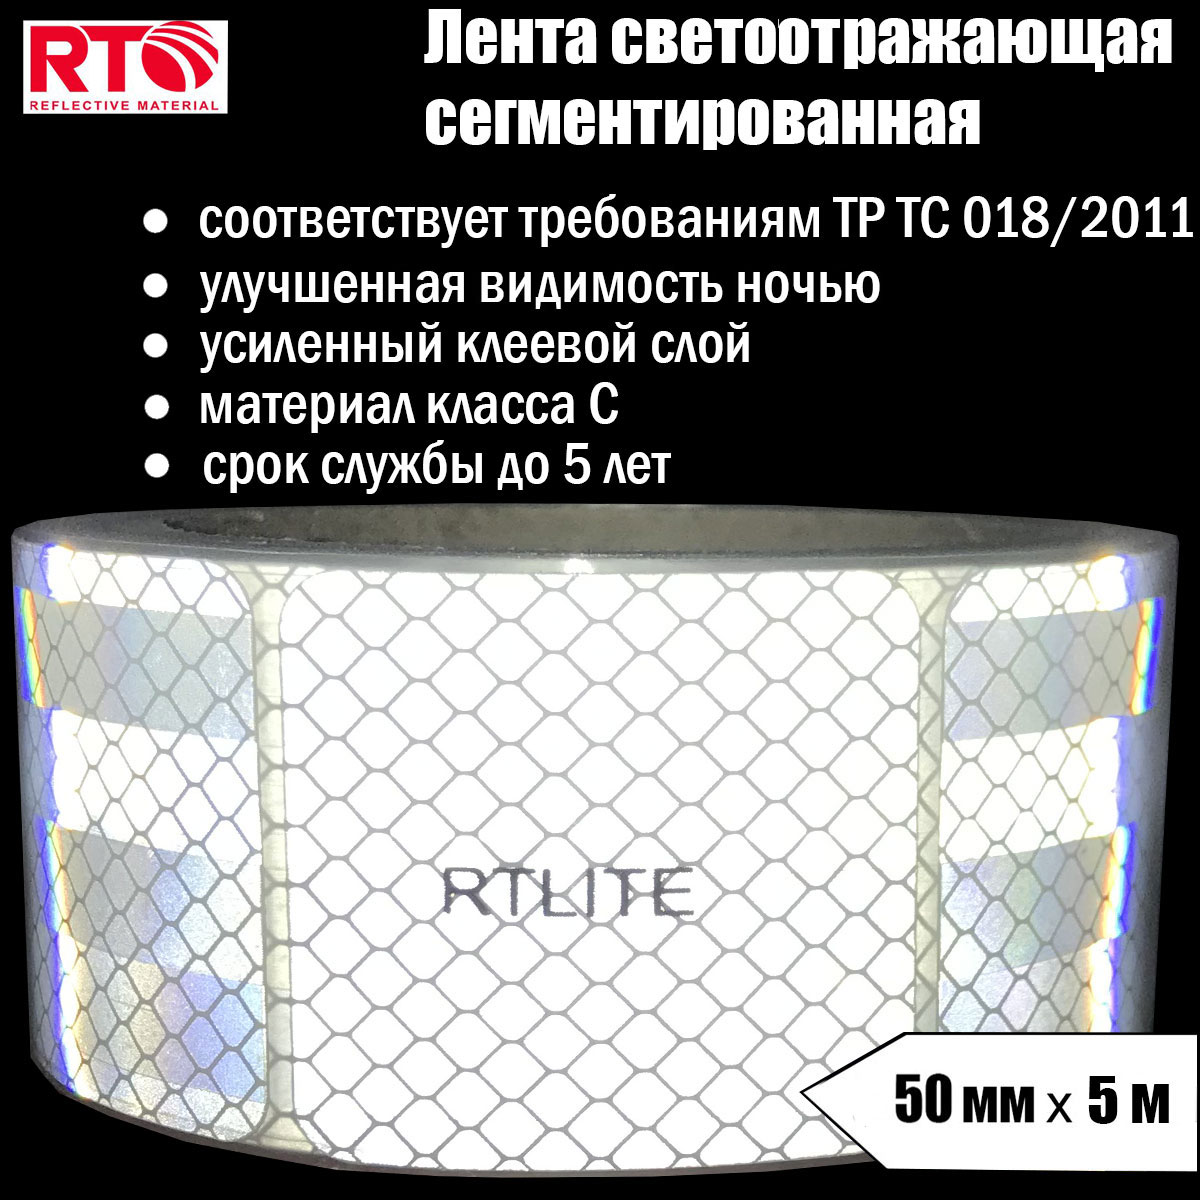 Лента светоотражающая сегментированная RTLITE RT-V104 для контурной маркировки, 50мм х 5м